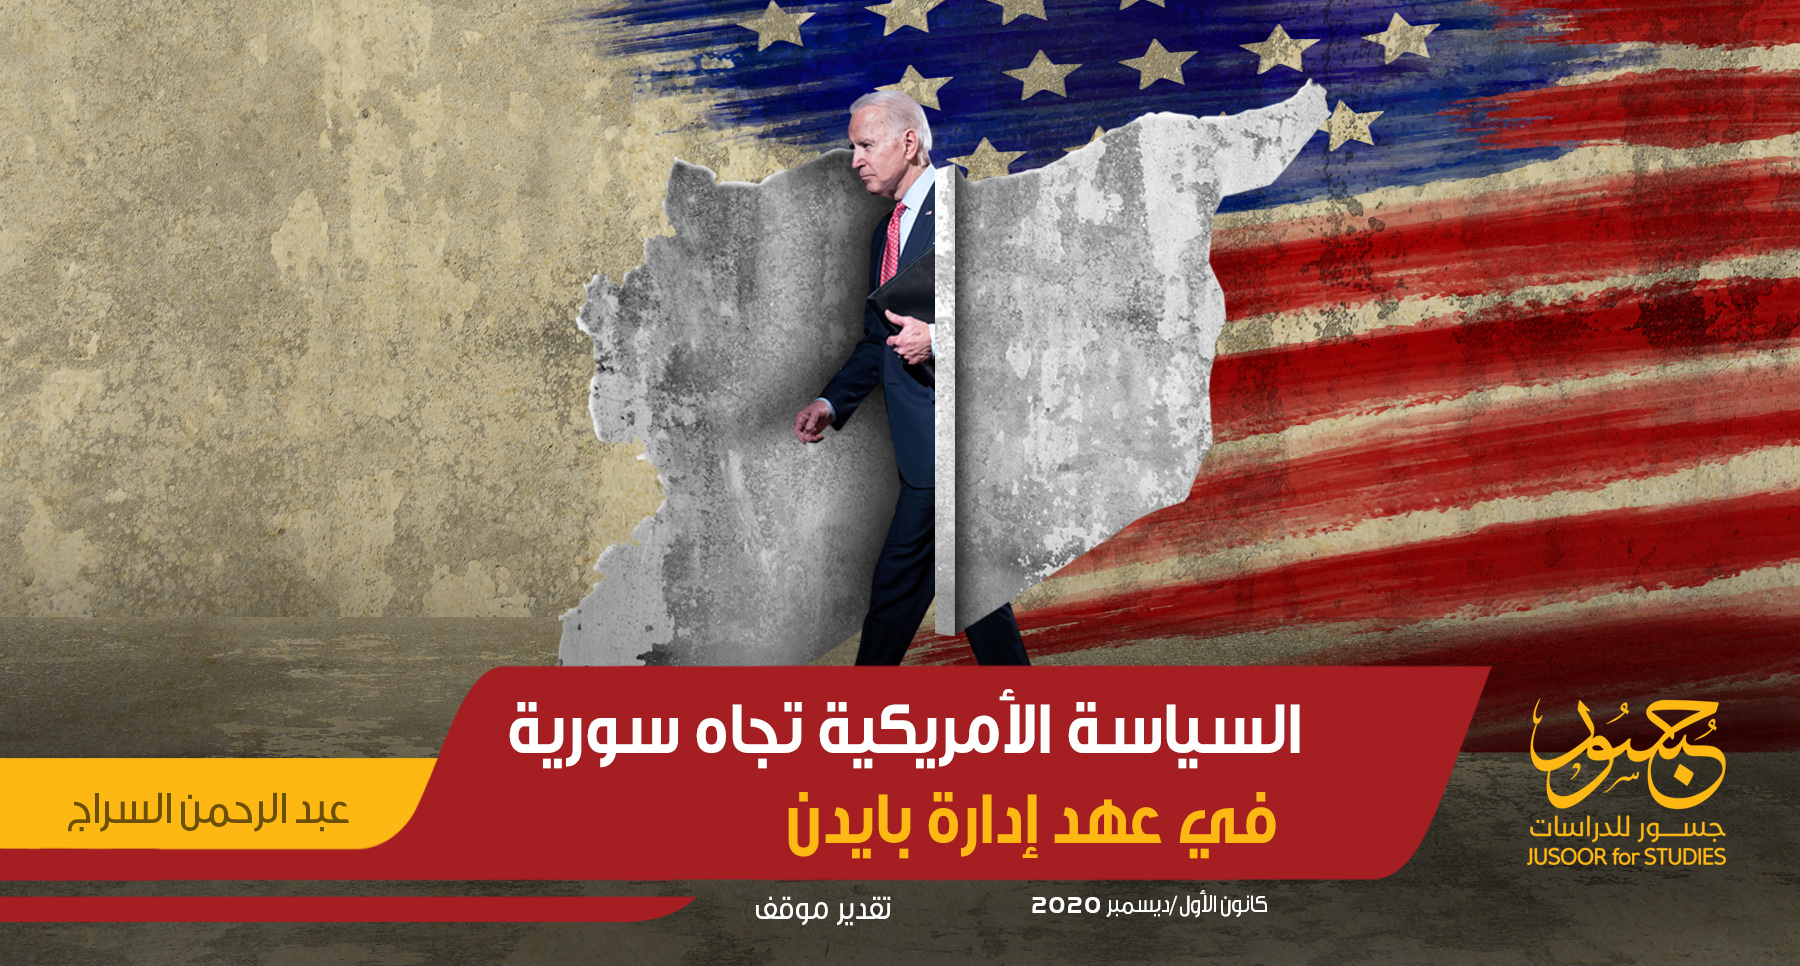 السياسة الأمريكية تجاه سورية في عهد إدارة بايدن